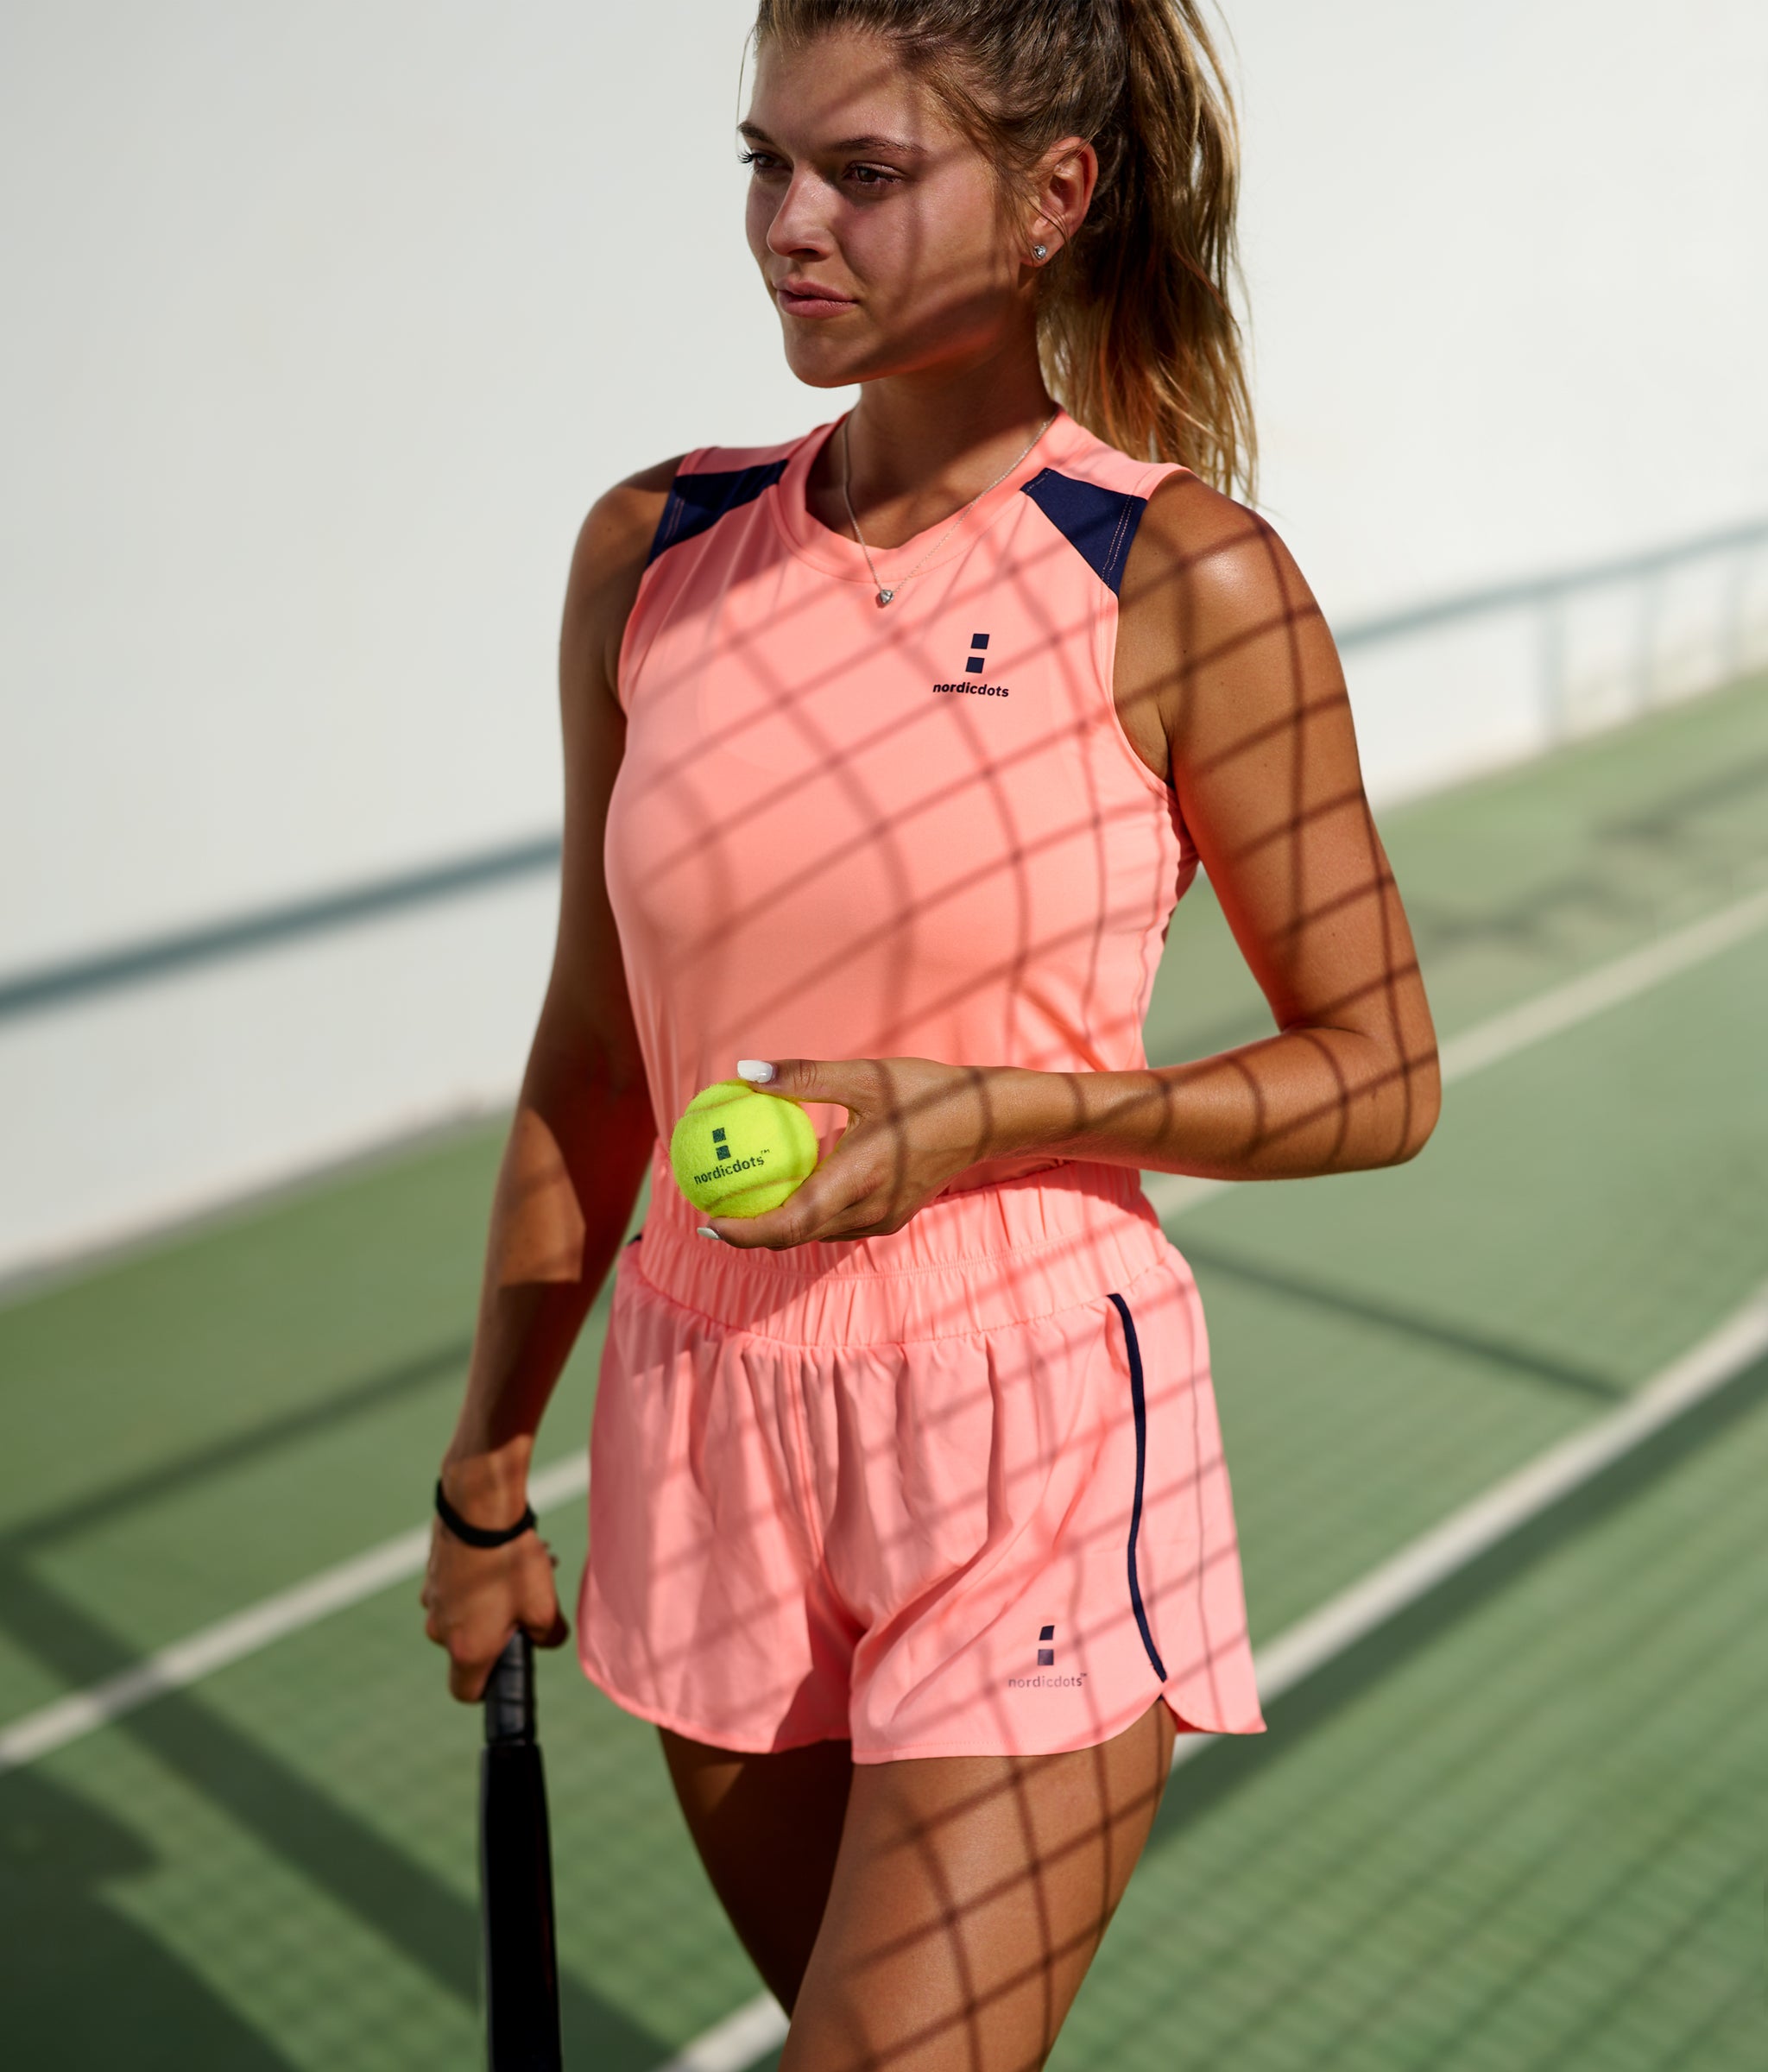 nordicdots tennis padel apparel for women nordicdots.com melon tank-top and shorts